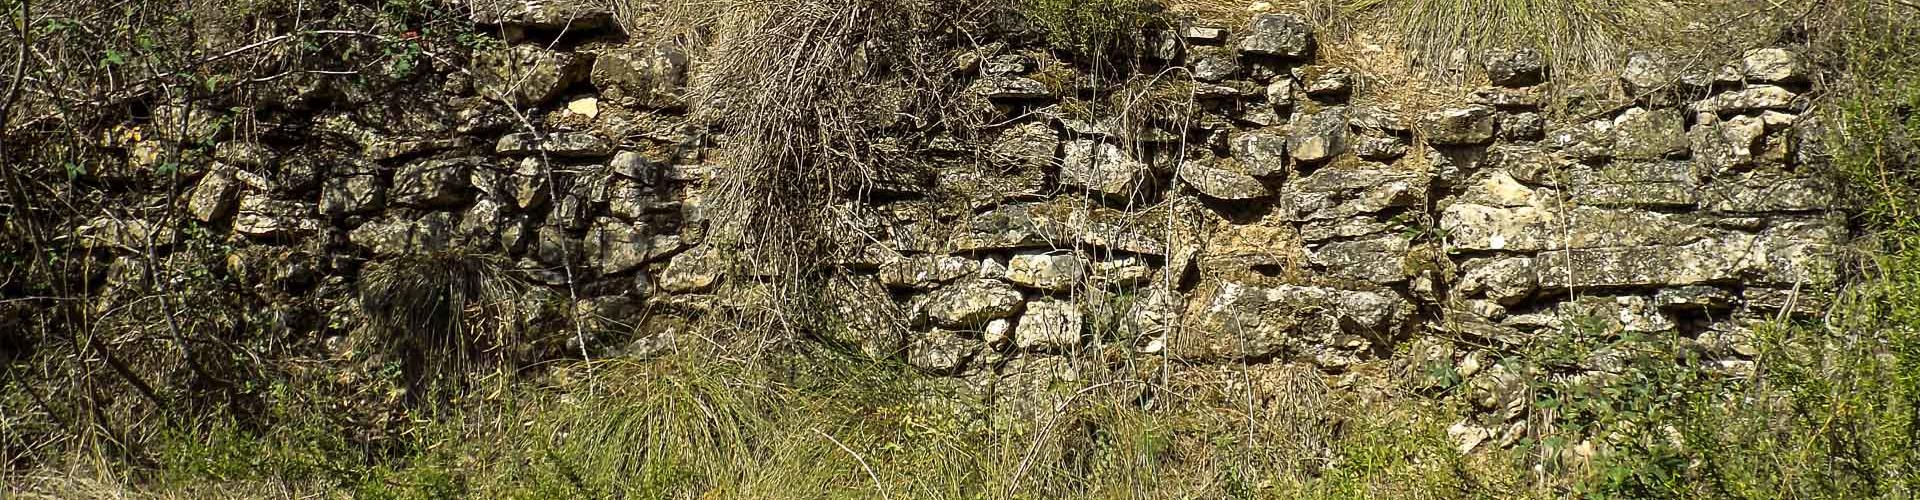 Murs de pedra seca a les antigues feixes de vinya